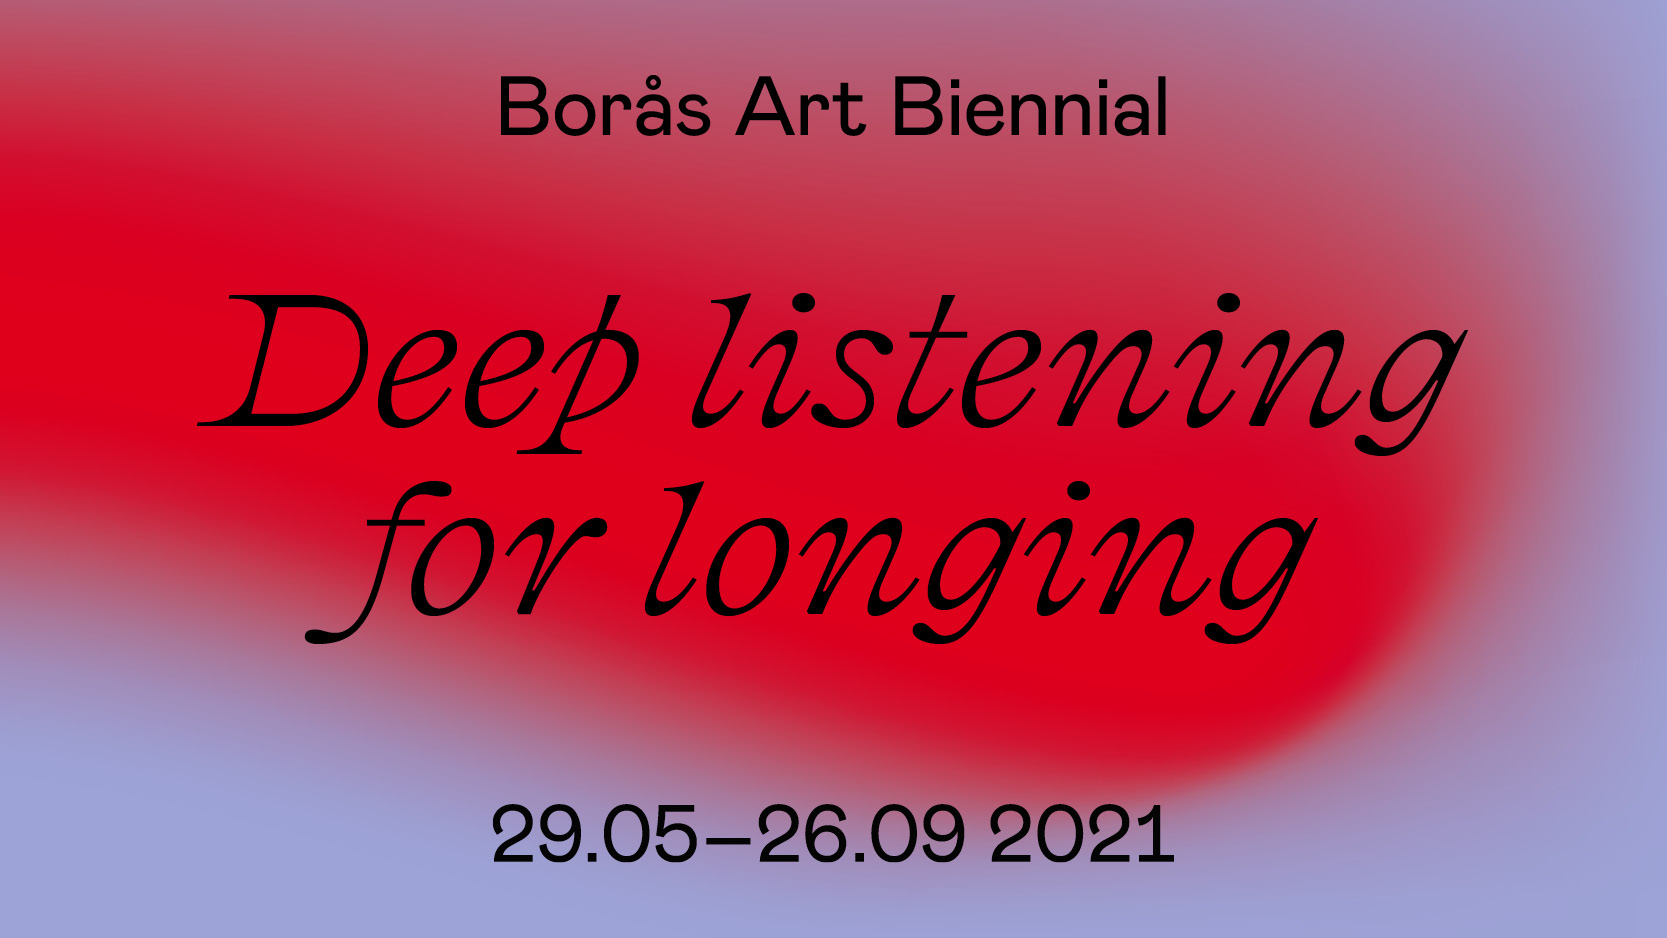 typografisk bild med texten Deep listening for longing mot lila och röd bakgrund